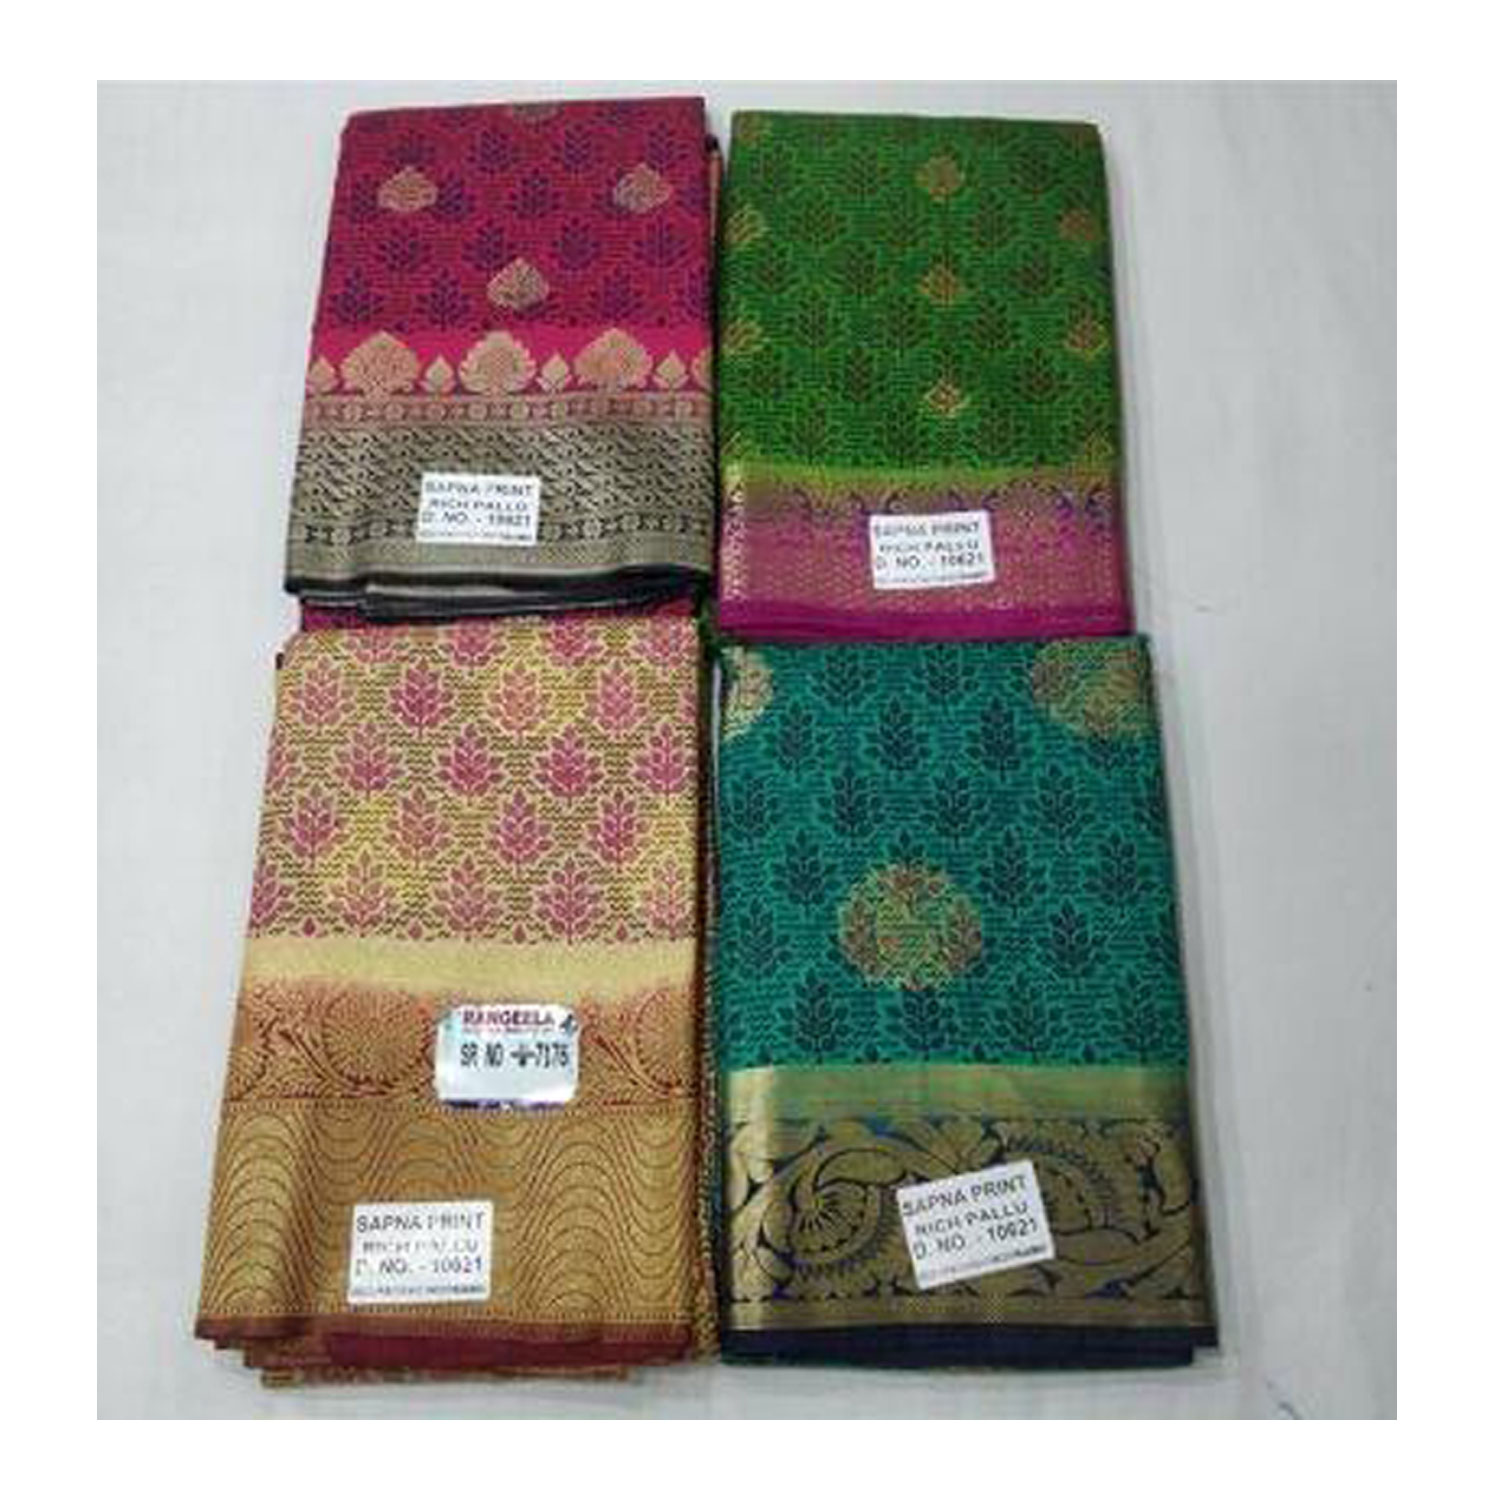  Women's Silk Cotton Weaving Work Sapna Print Saree |D.NO - W-7176| Pack of 4